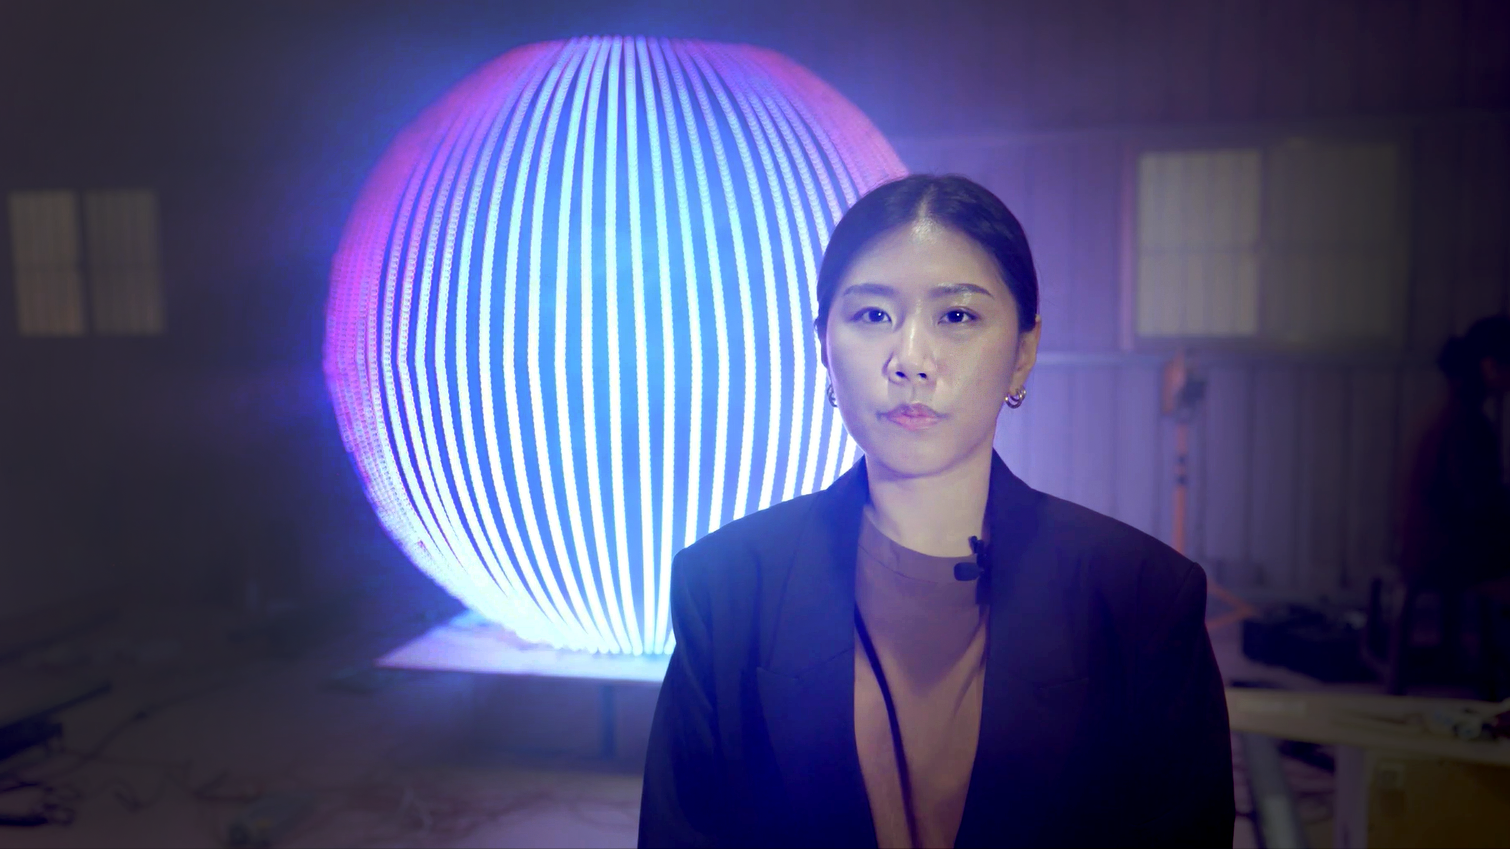 「當若科技藝術」的Sophia在此次專案中，負責視覺設計及概念發想，以置於迷霧中的巨型球體燈件，象徵被溫室氣體籠罩的地球。